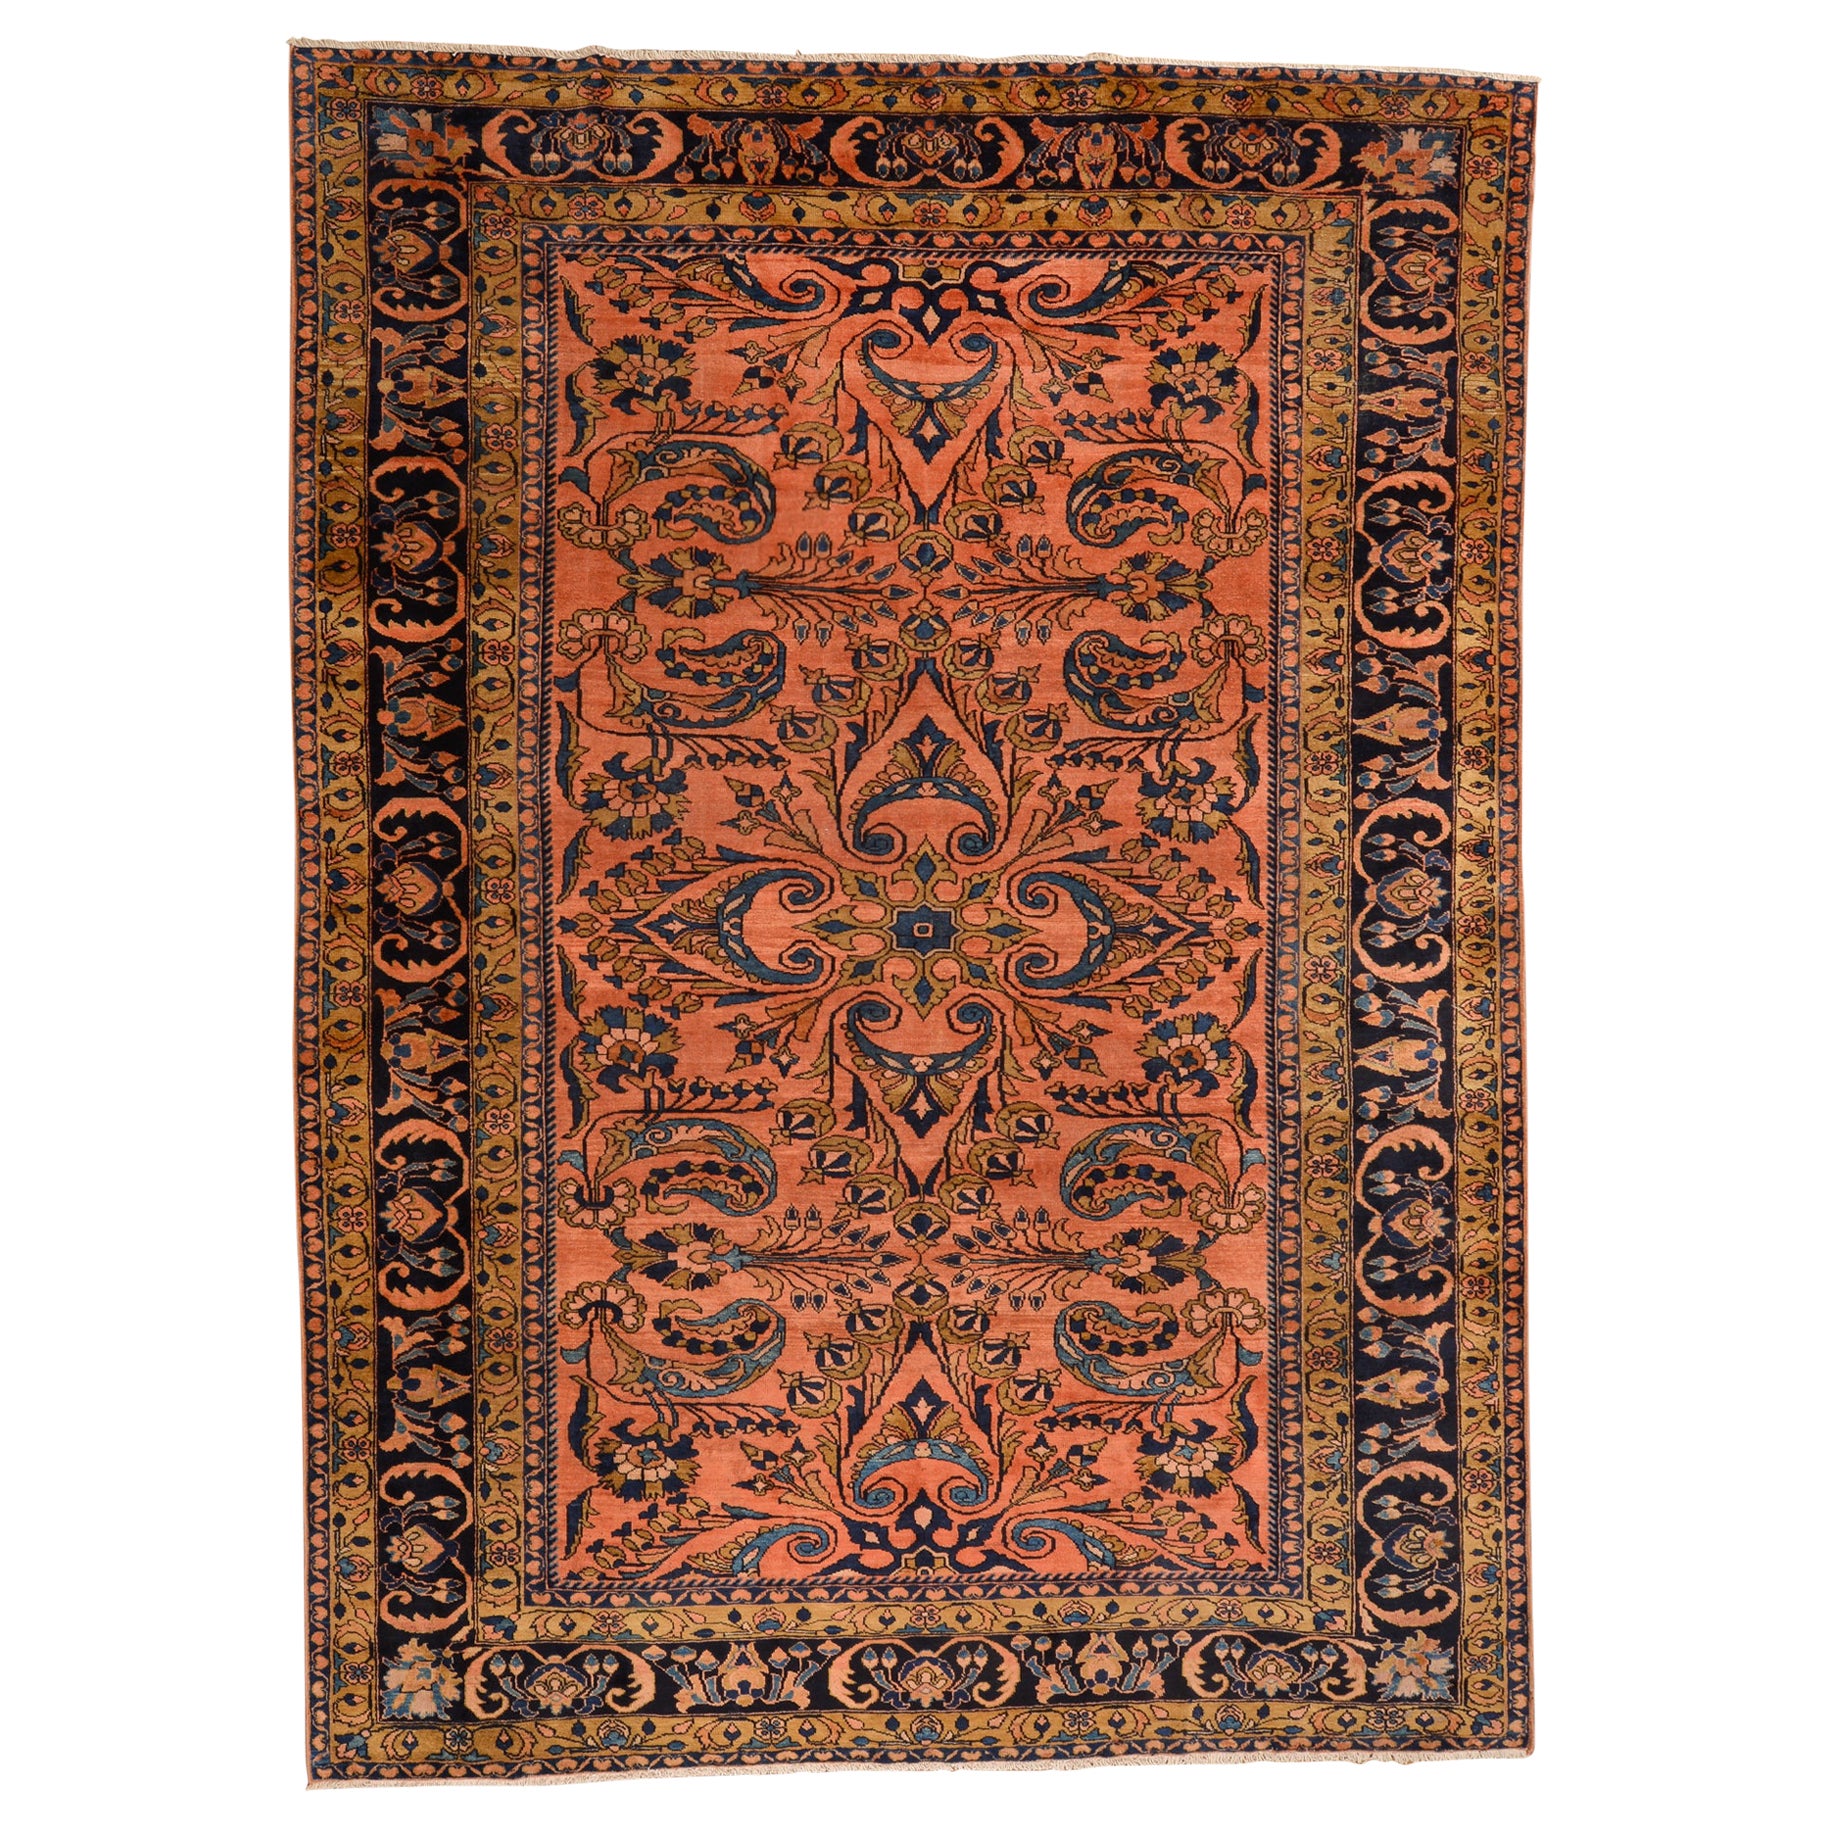 Antique Elegant Rare Oriental Carpet For Sale